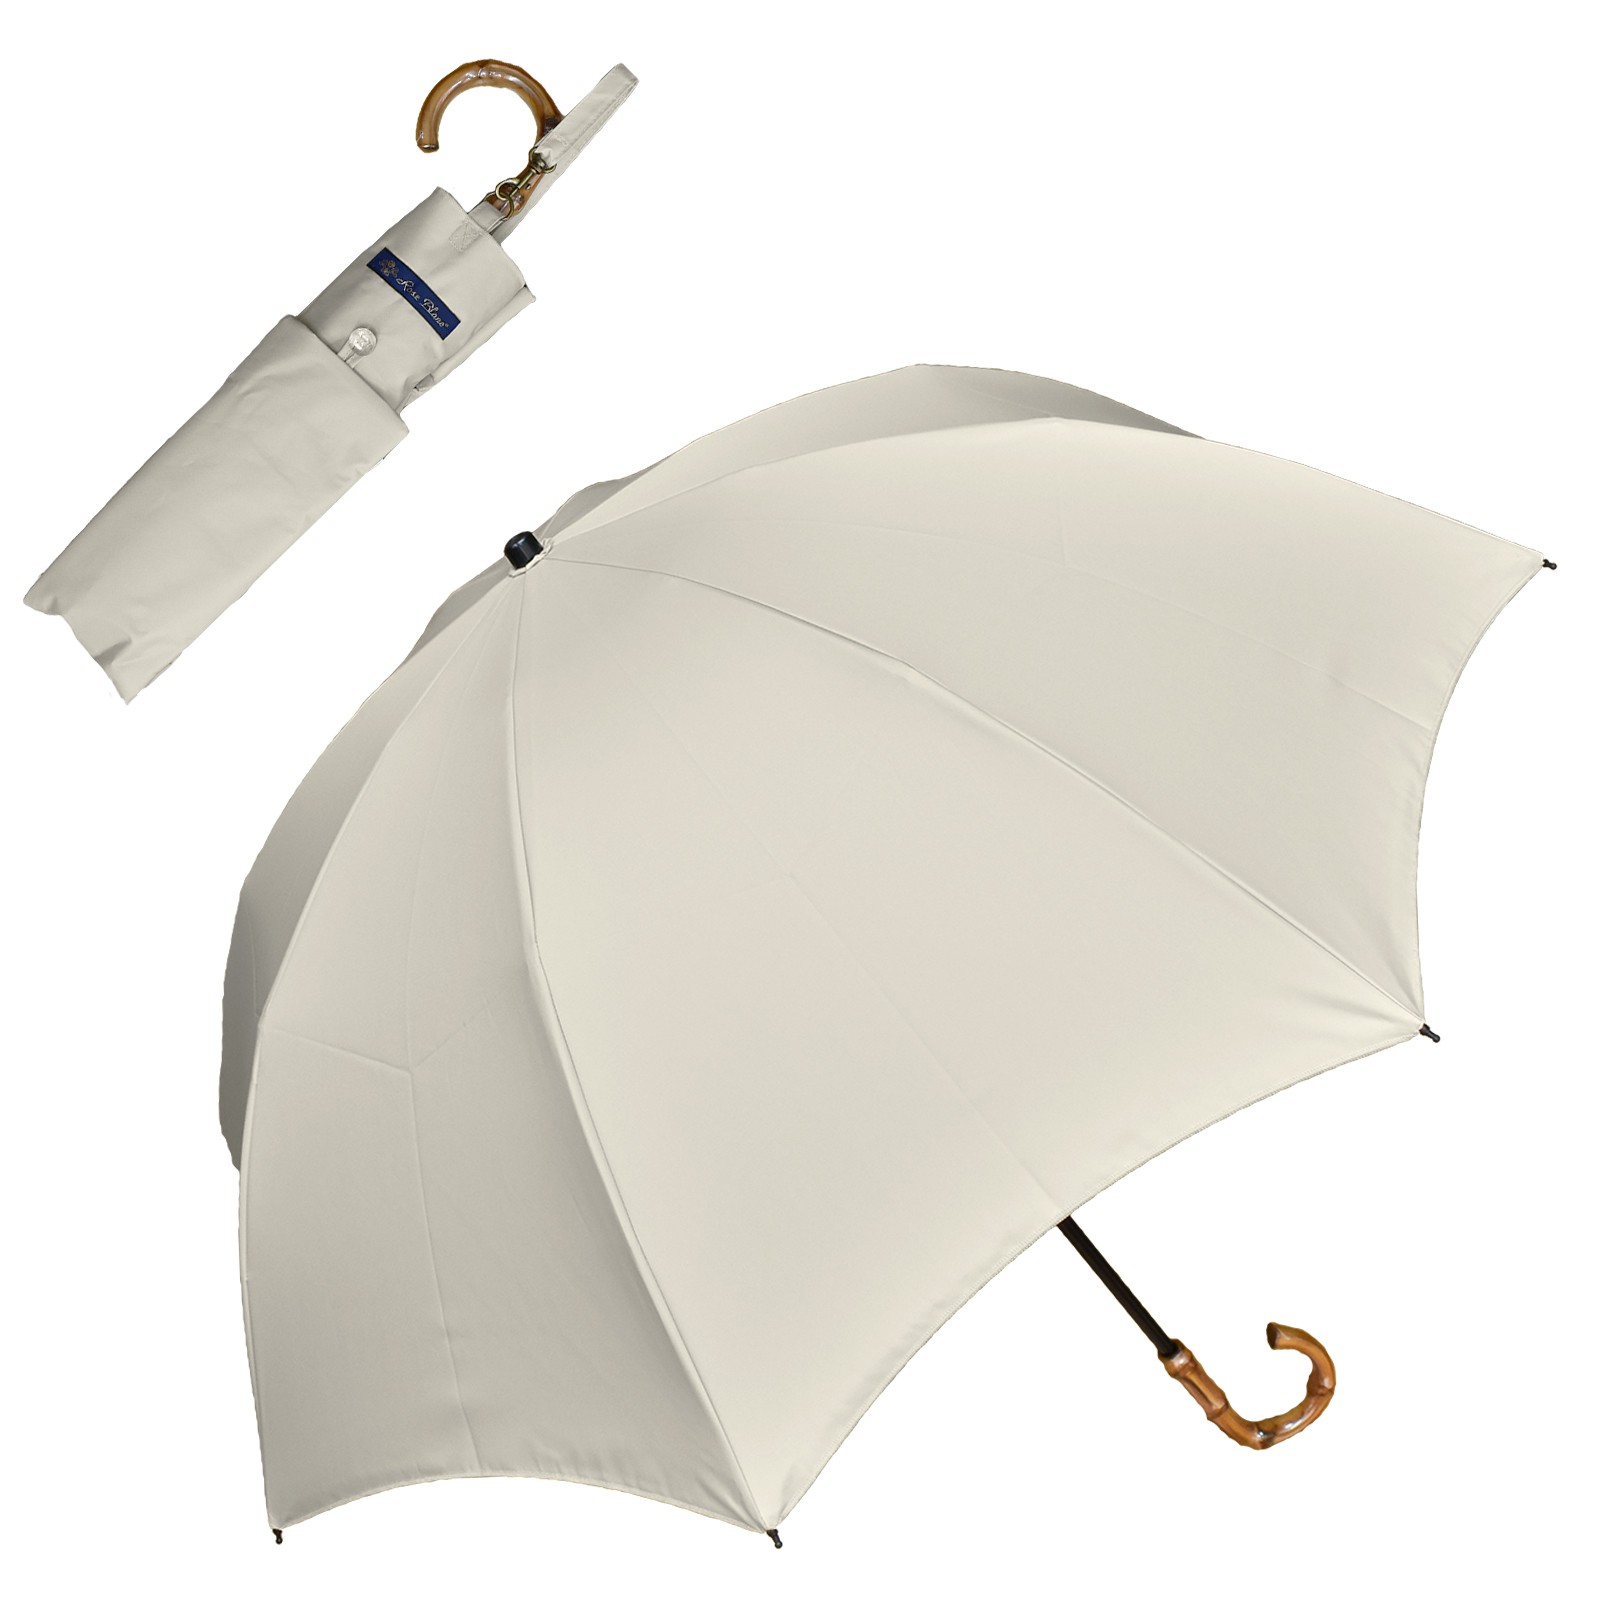 日傘 完全遮光 折りたたみ uv 晴雨兼用 軽量 涼しい おしゃれ 2段 遮熱 折りたたみ傘 遮光 100% プレーン 50cm (傘袋付)